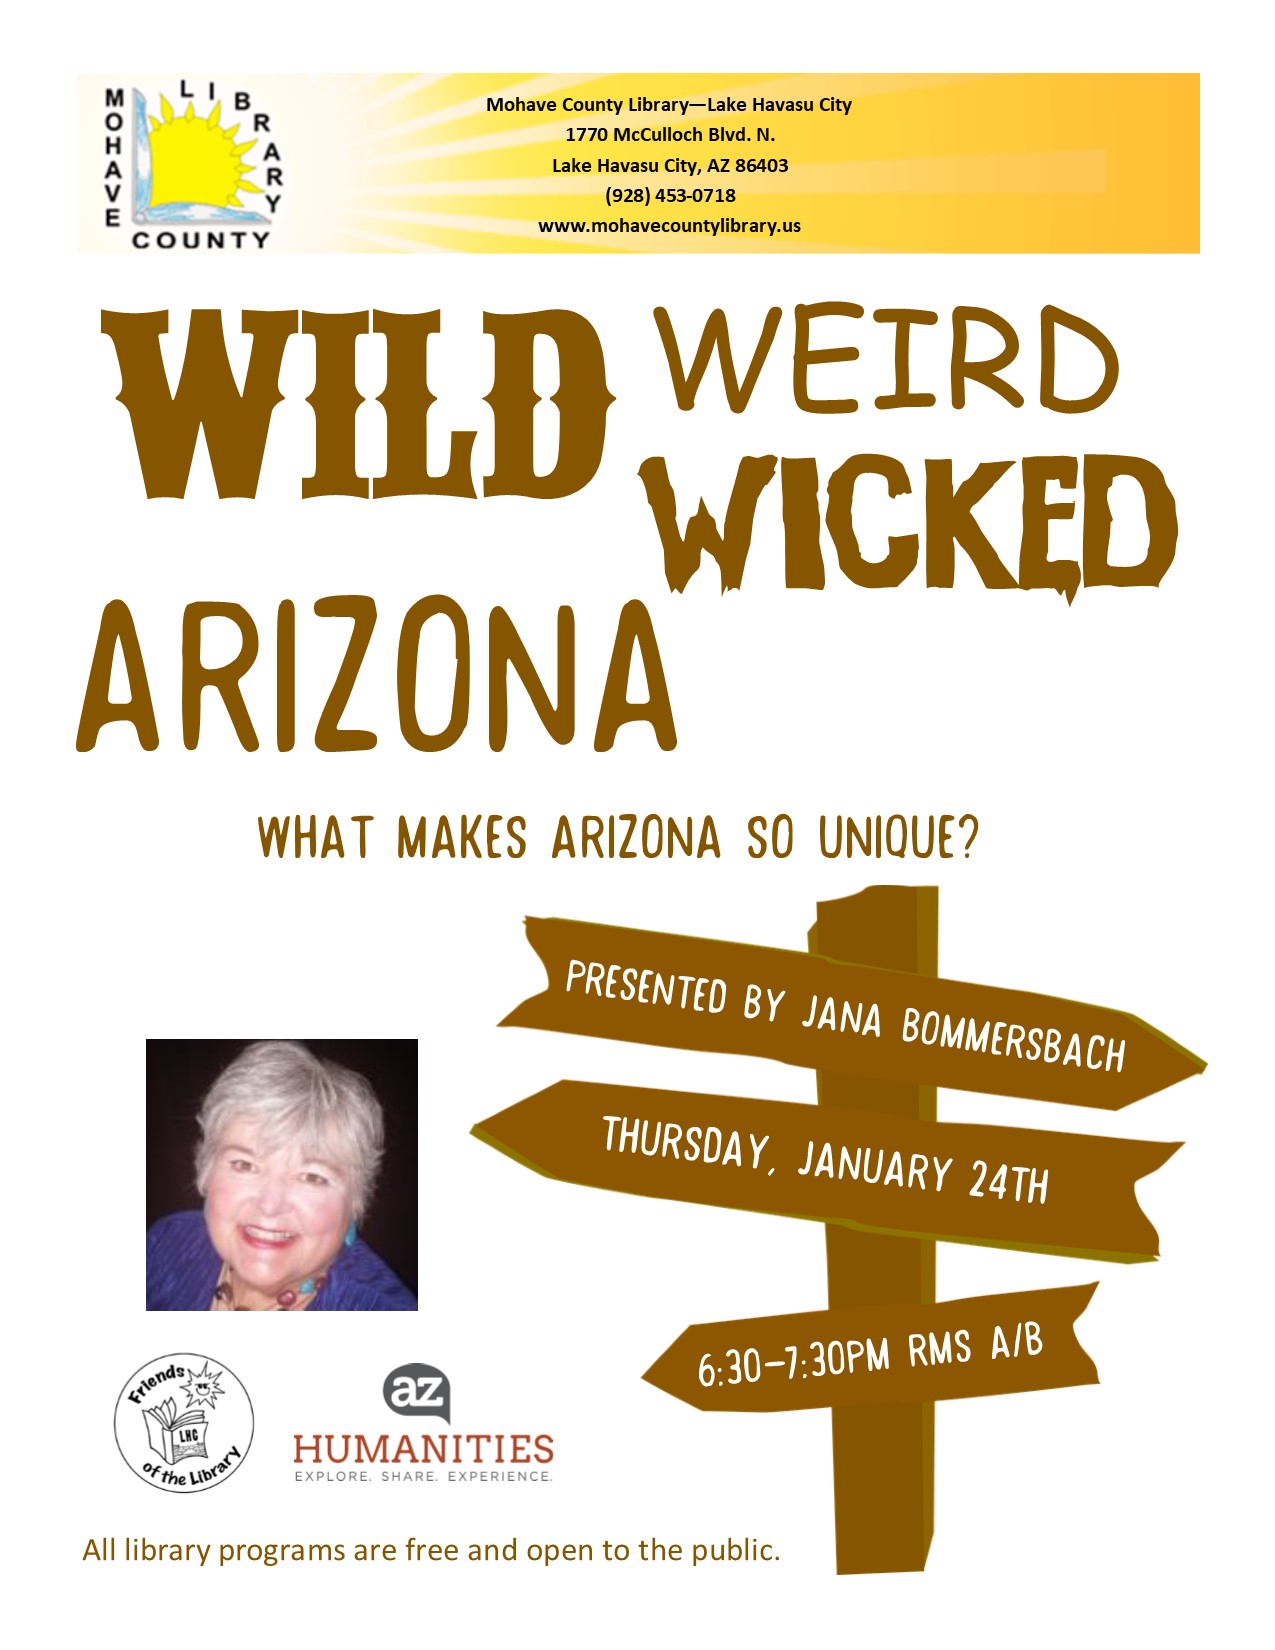 Wild Weird Wicked Arizona